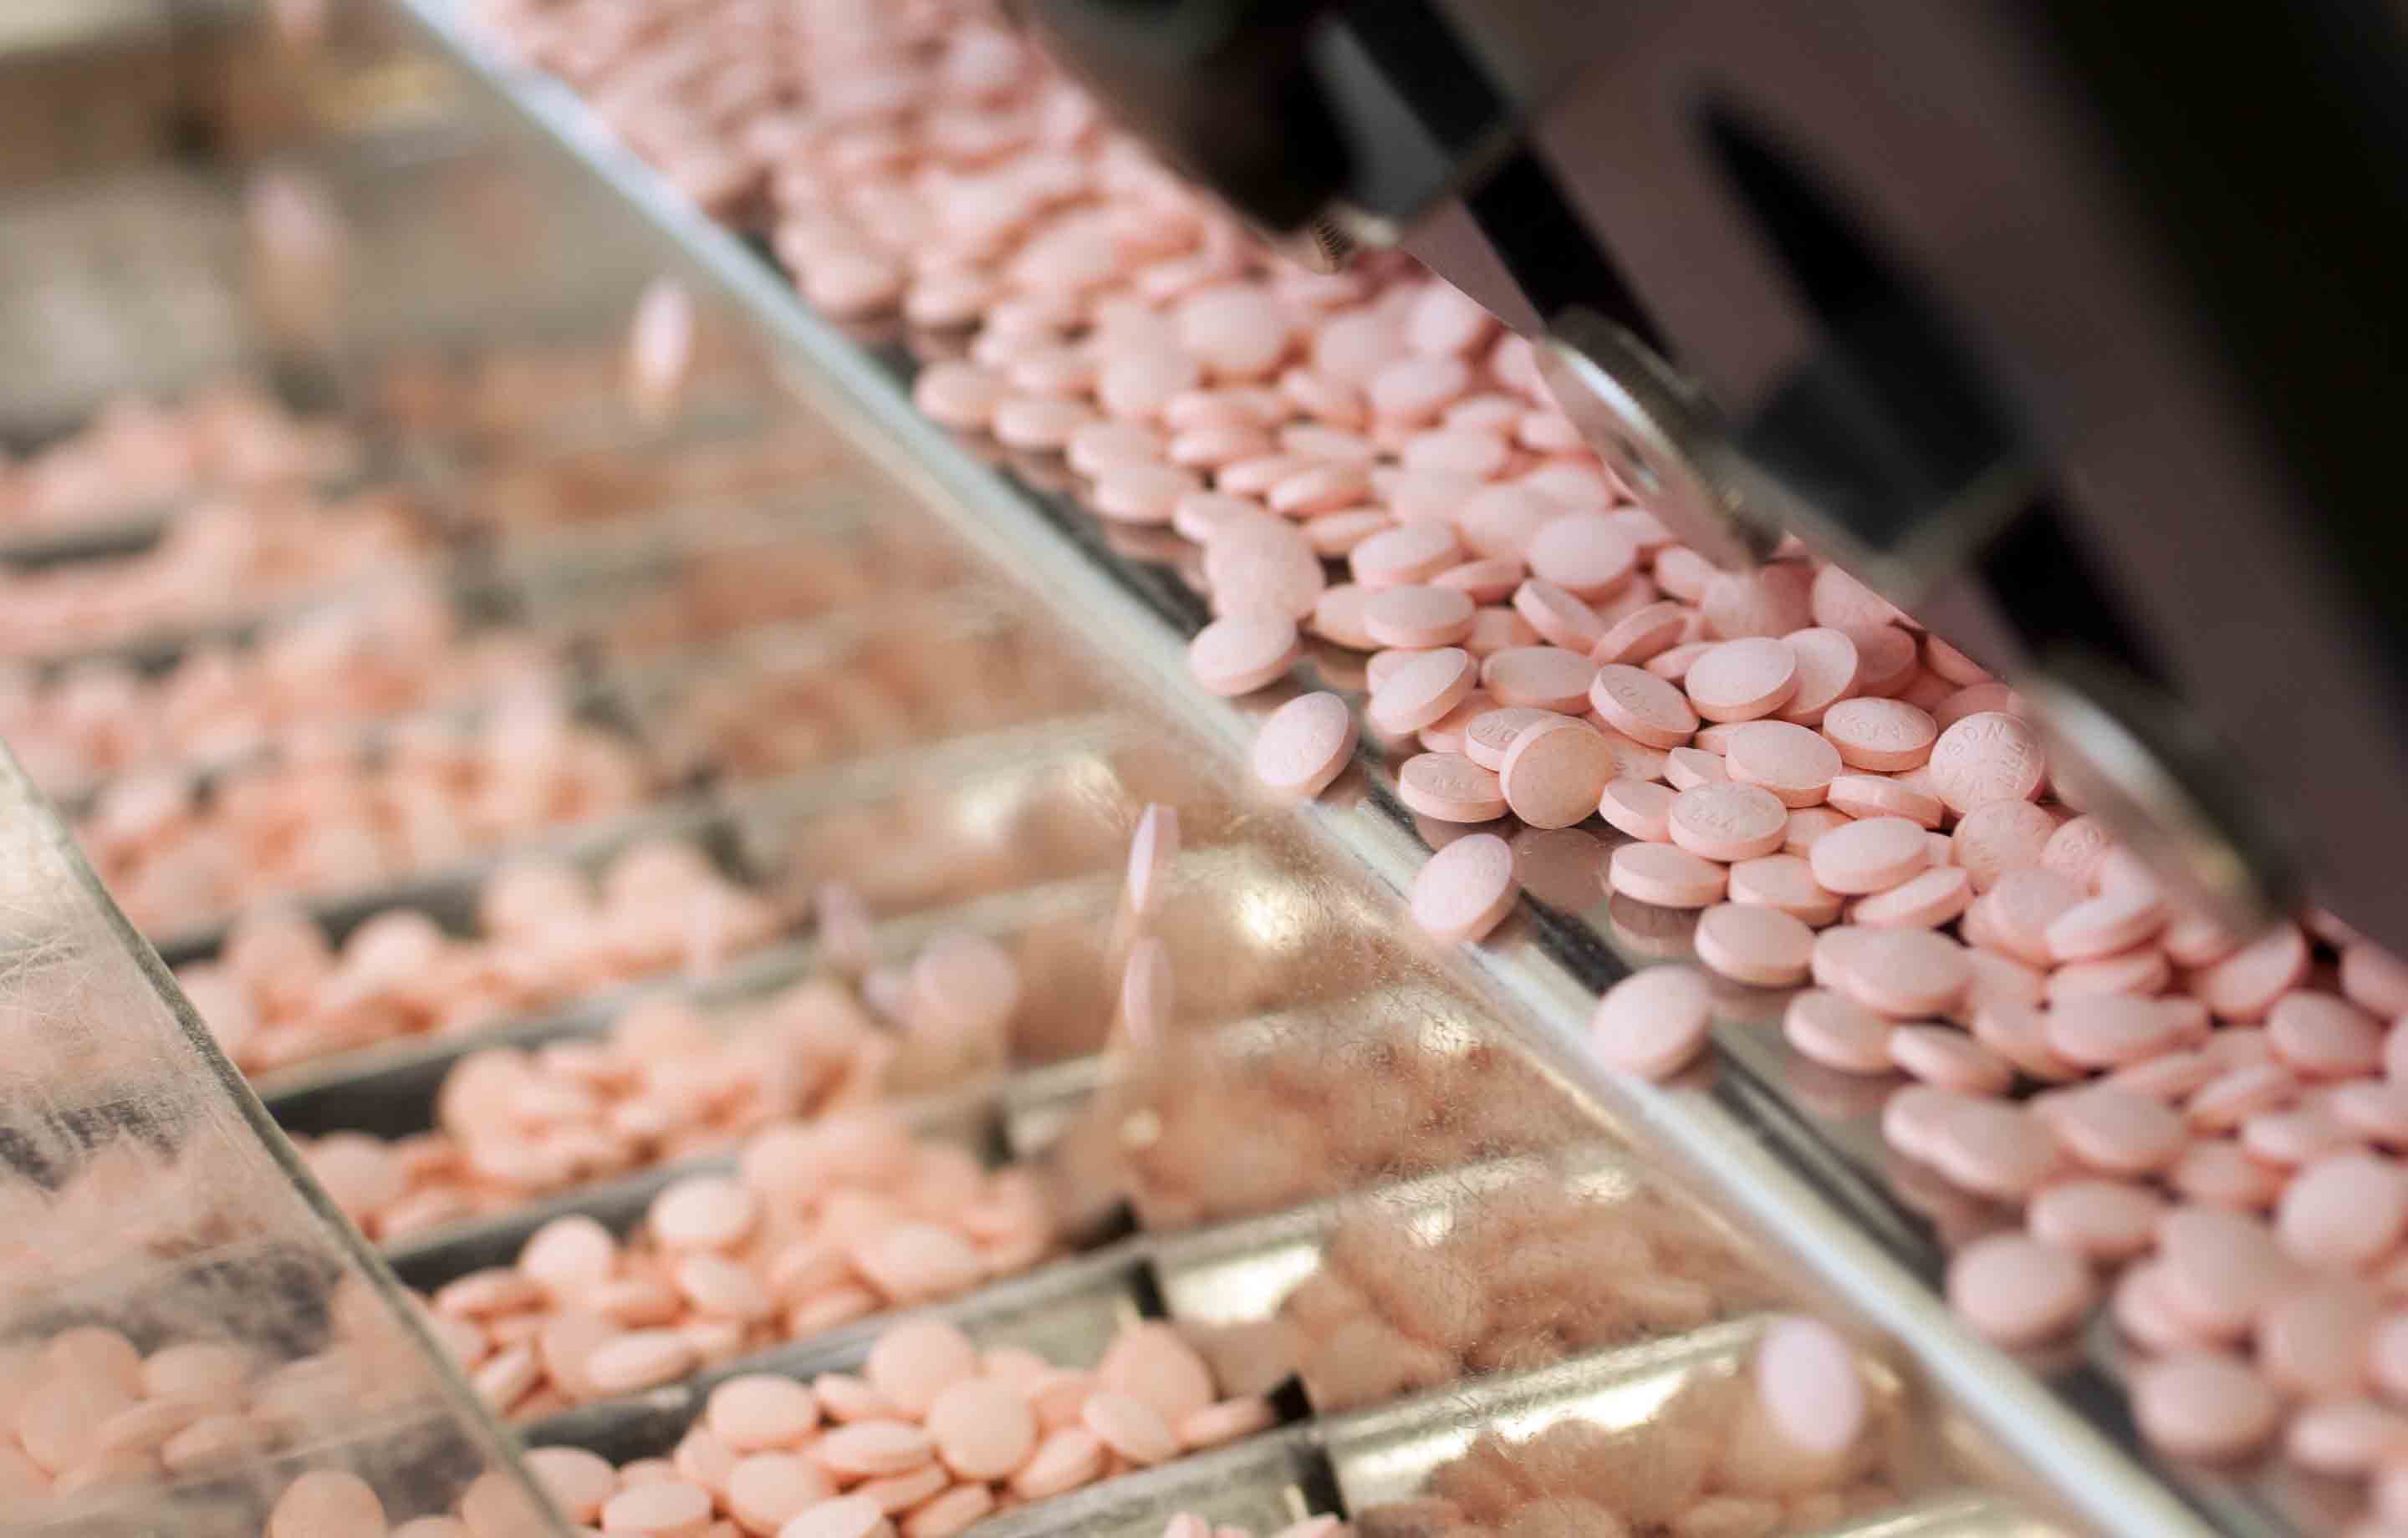 Round pink pills